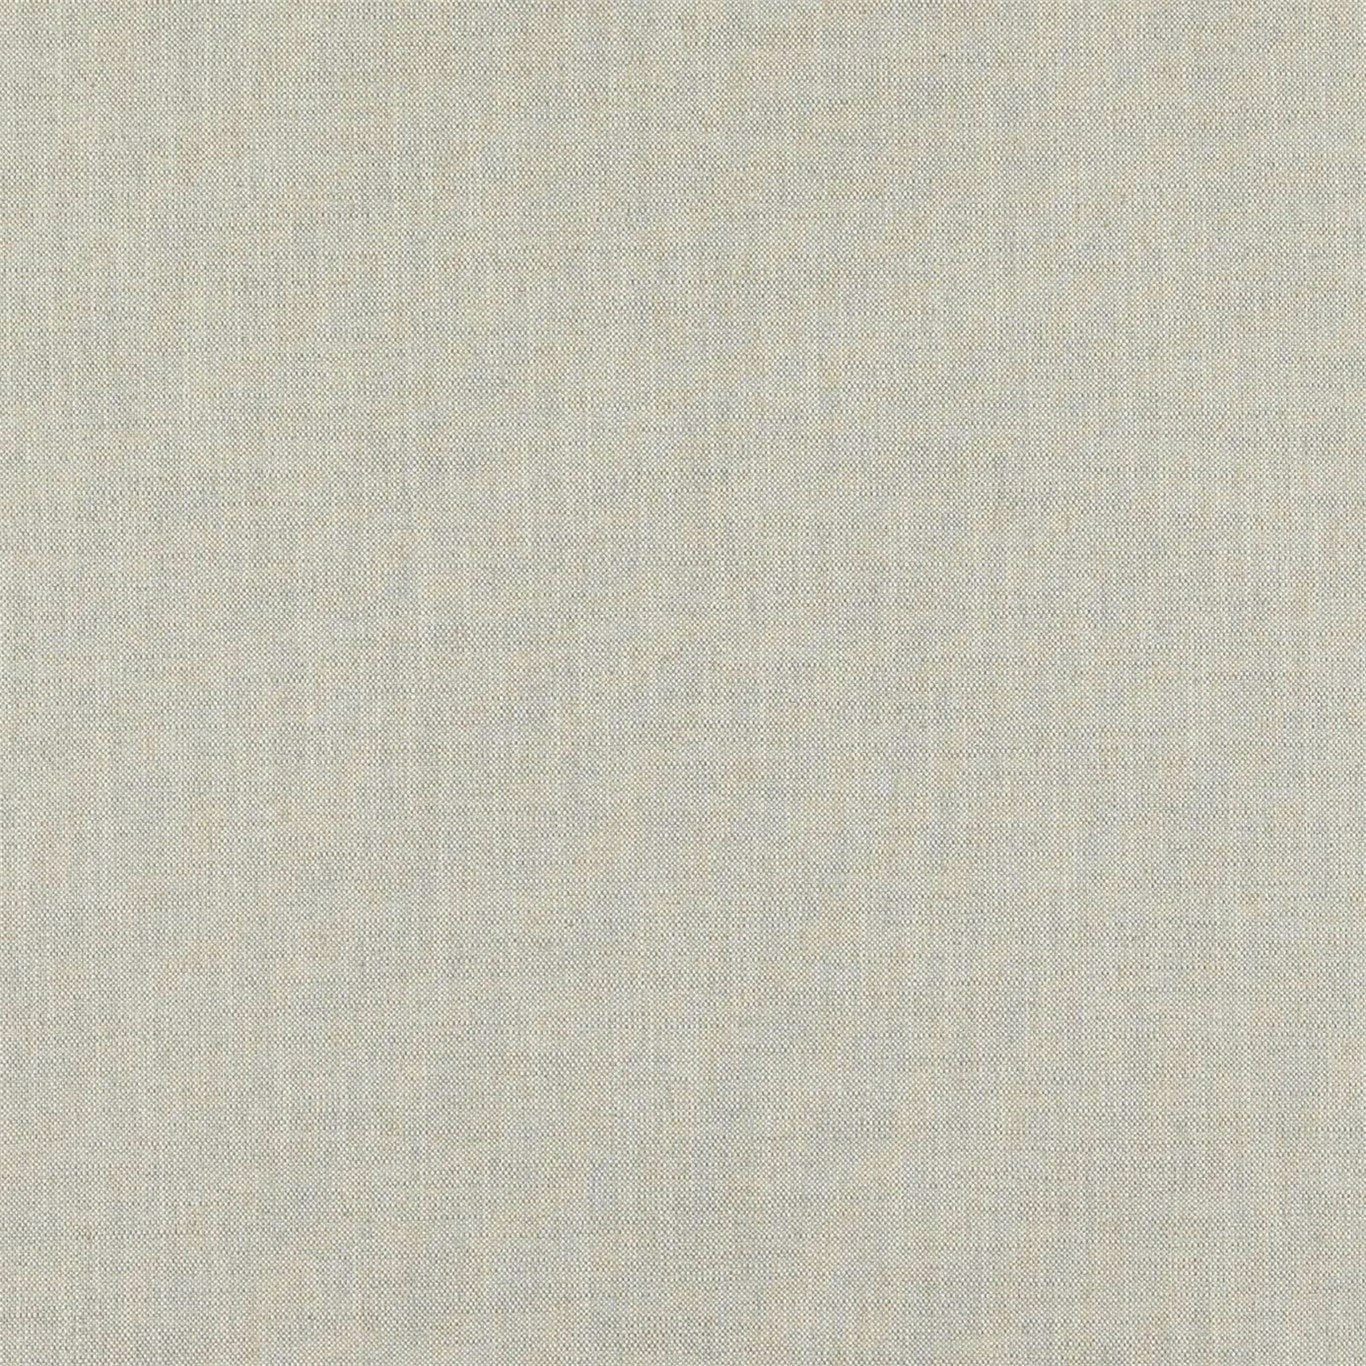 Maer Fabric by Sanderson